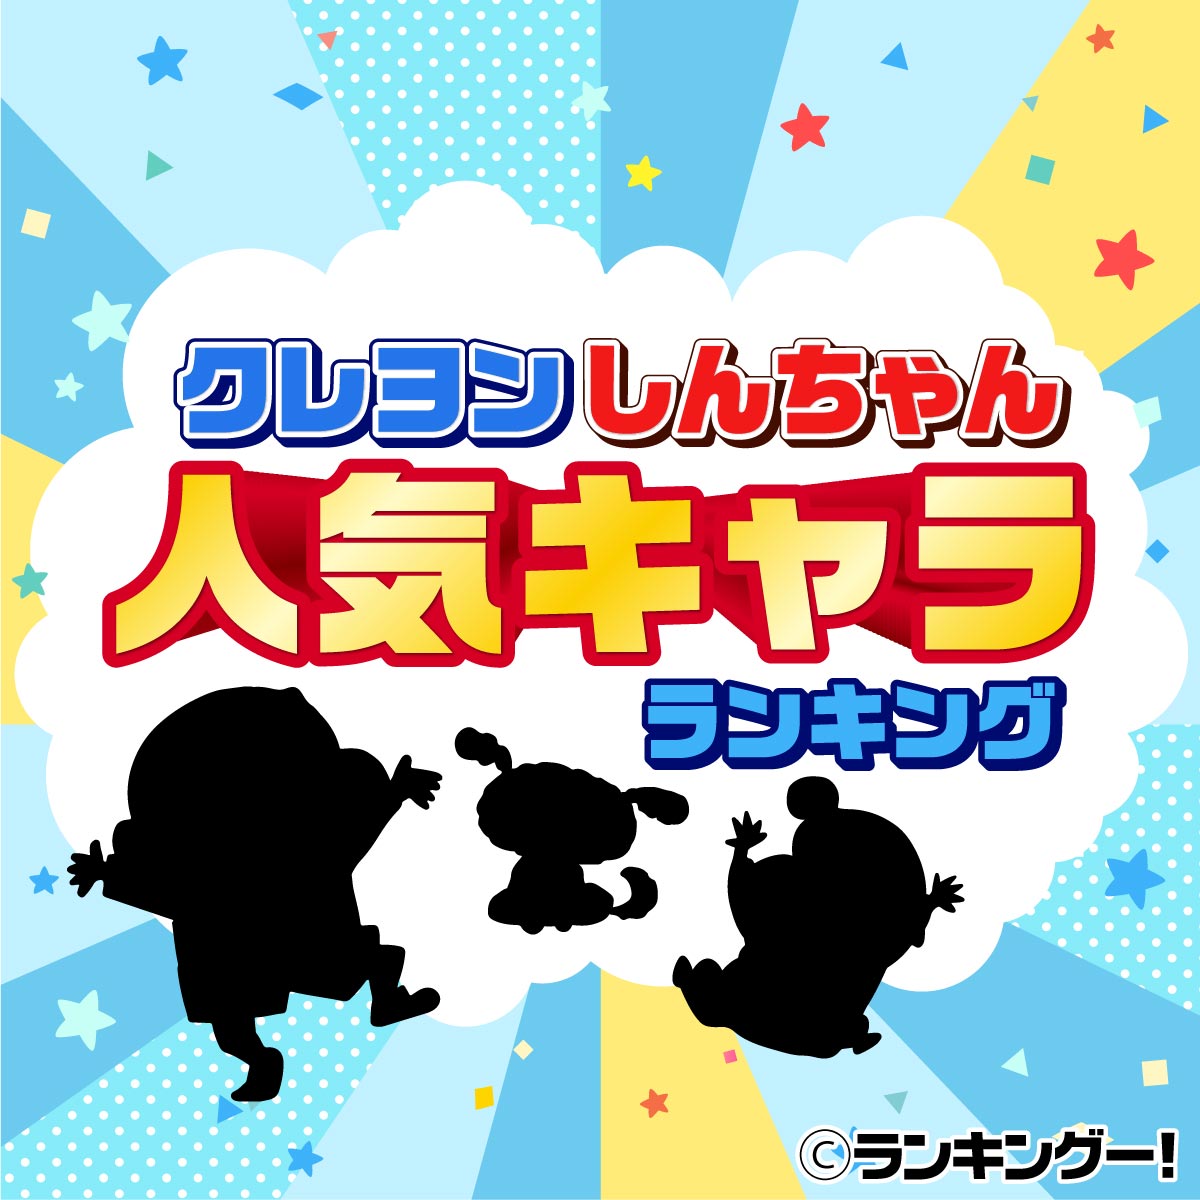 クレヨンしんちゃんキャラクター人気ランキングtop20 2020年最新版 9 10位 ランキングー